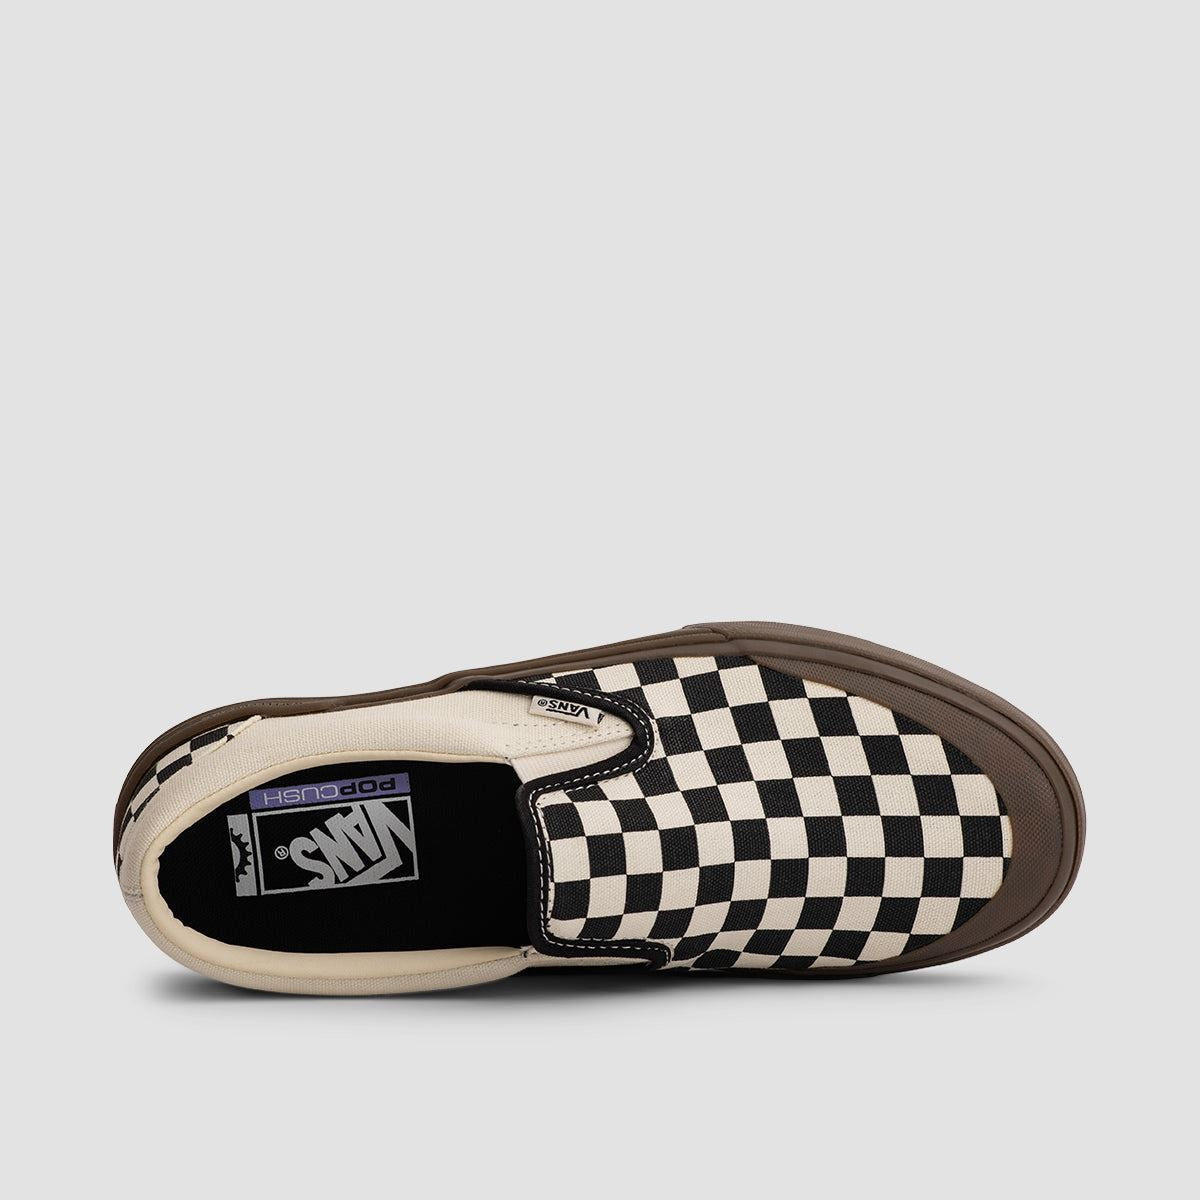 Vans BMX Slip-On Shoes - Checkerboard Black/Dark Gum